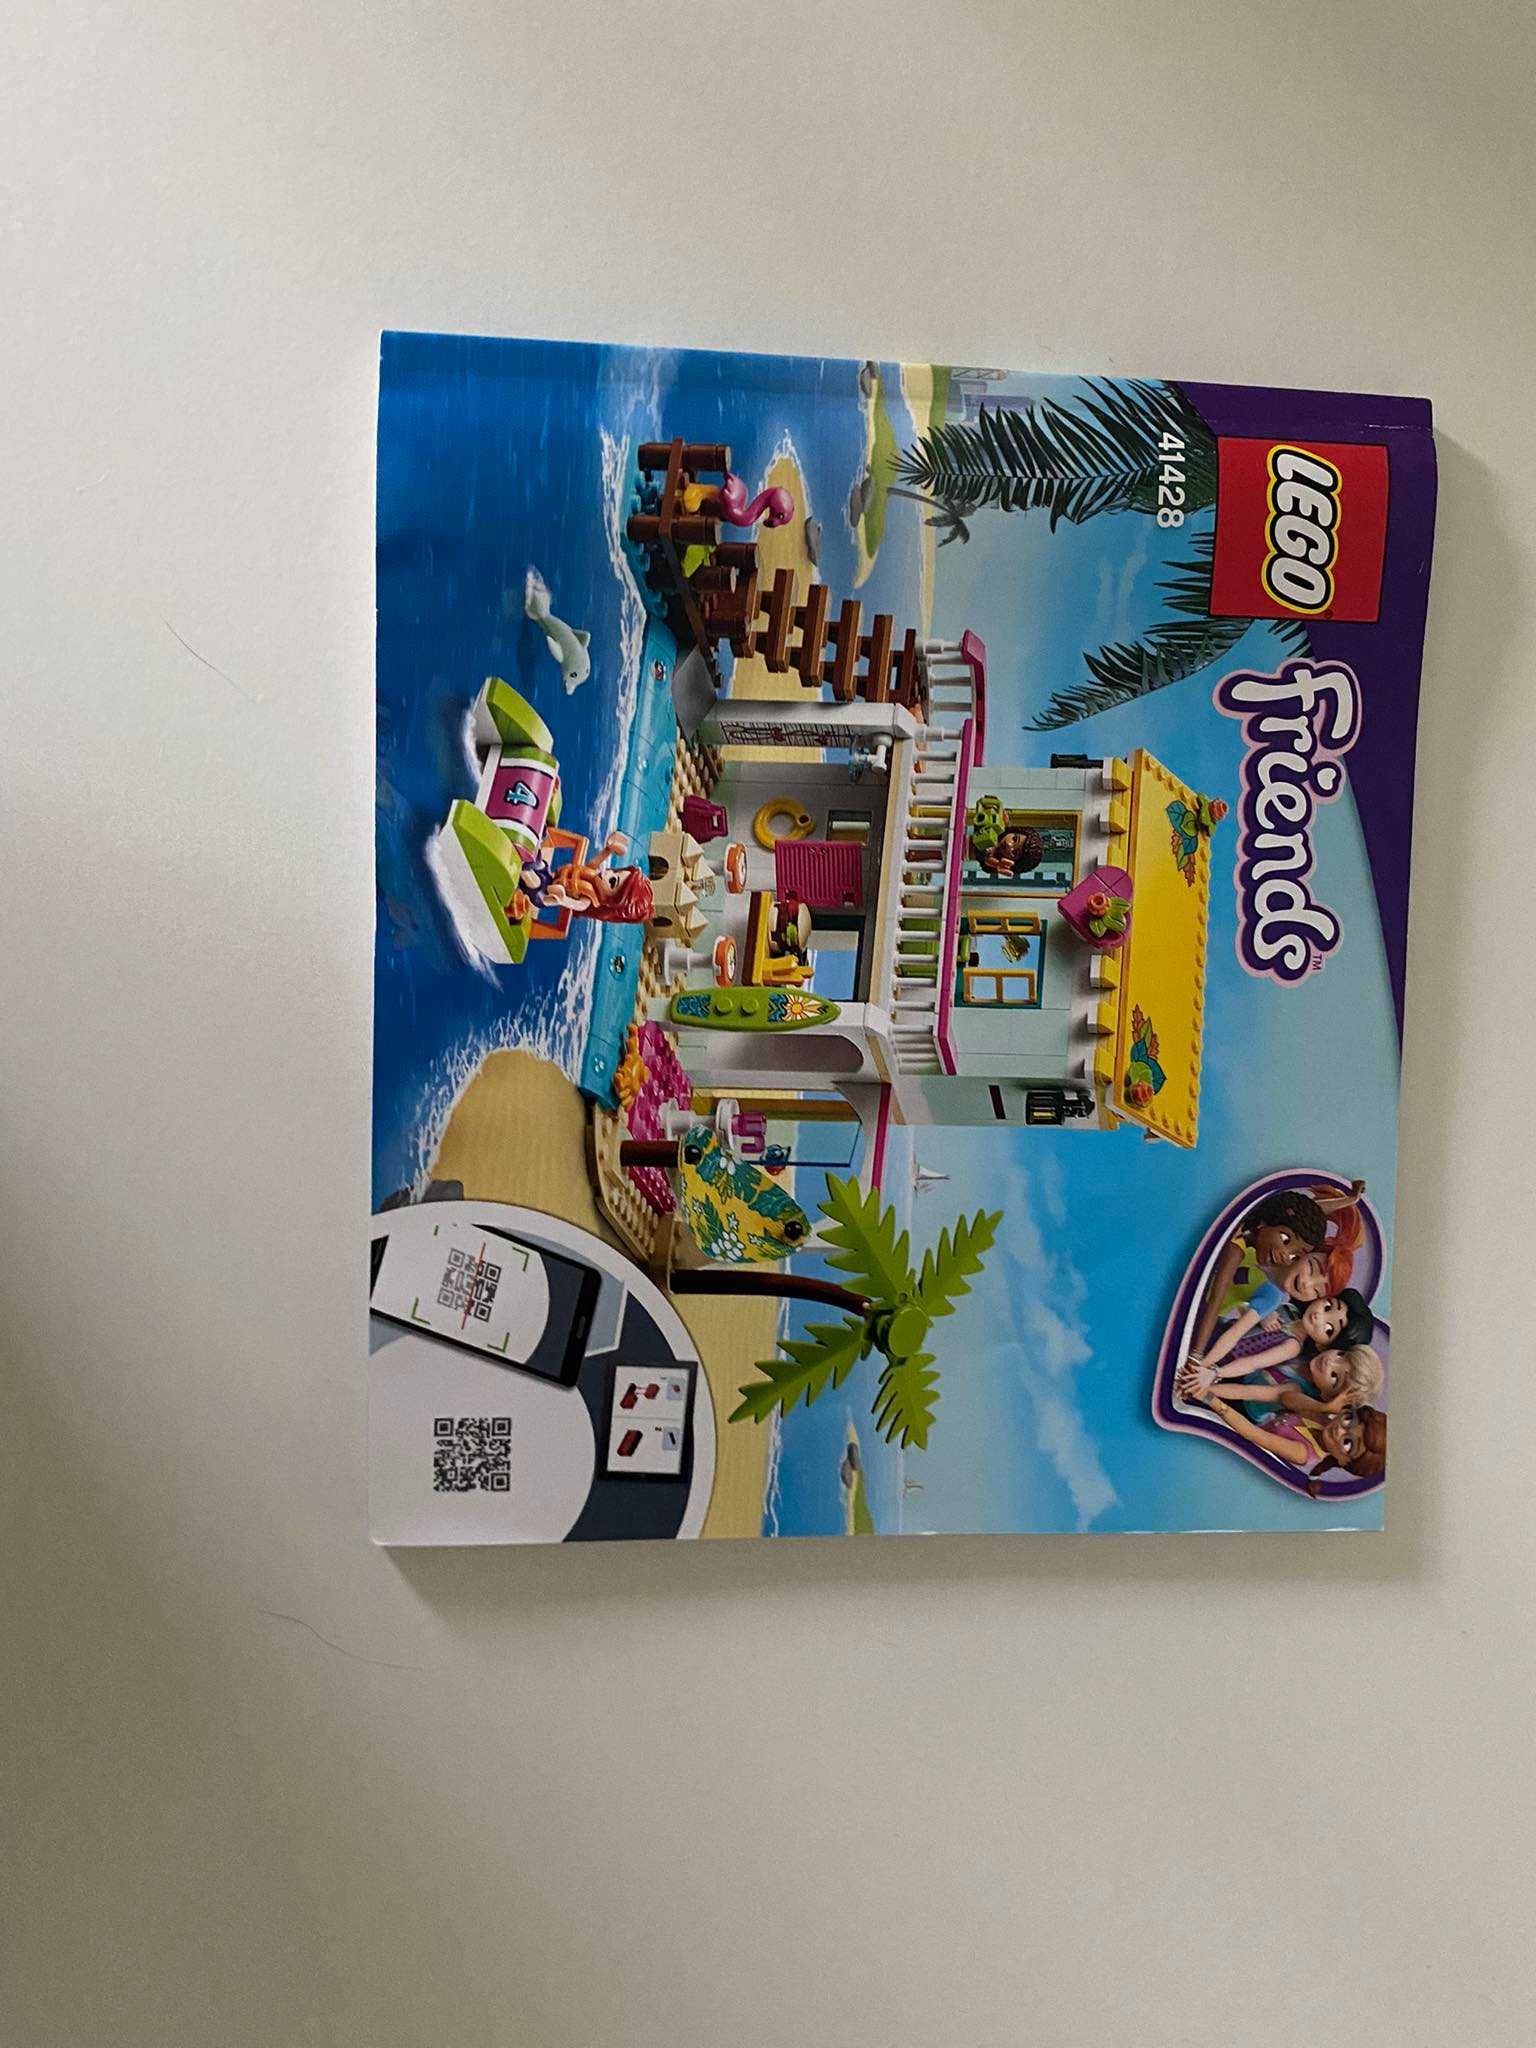 Lego Friends 41428 Domek na Plaży